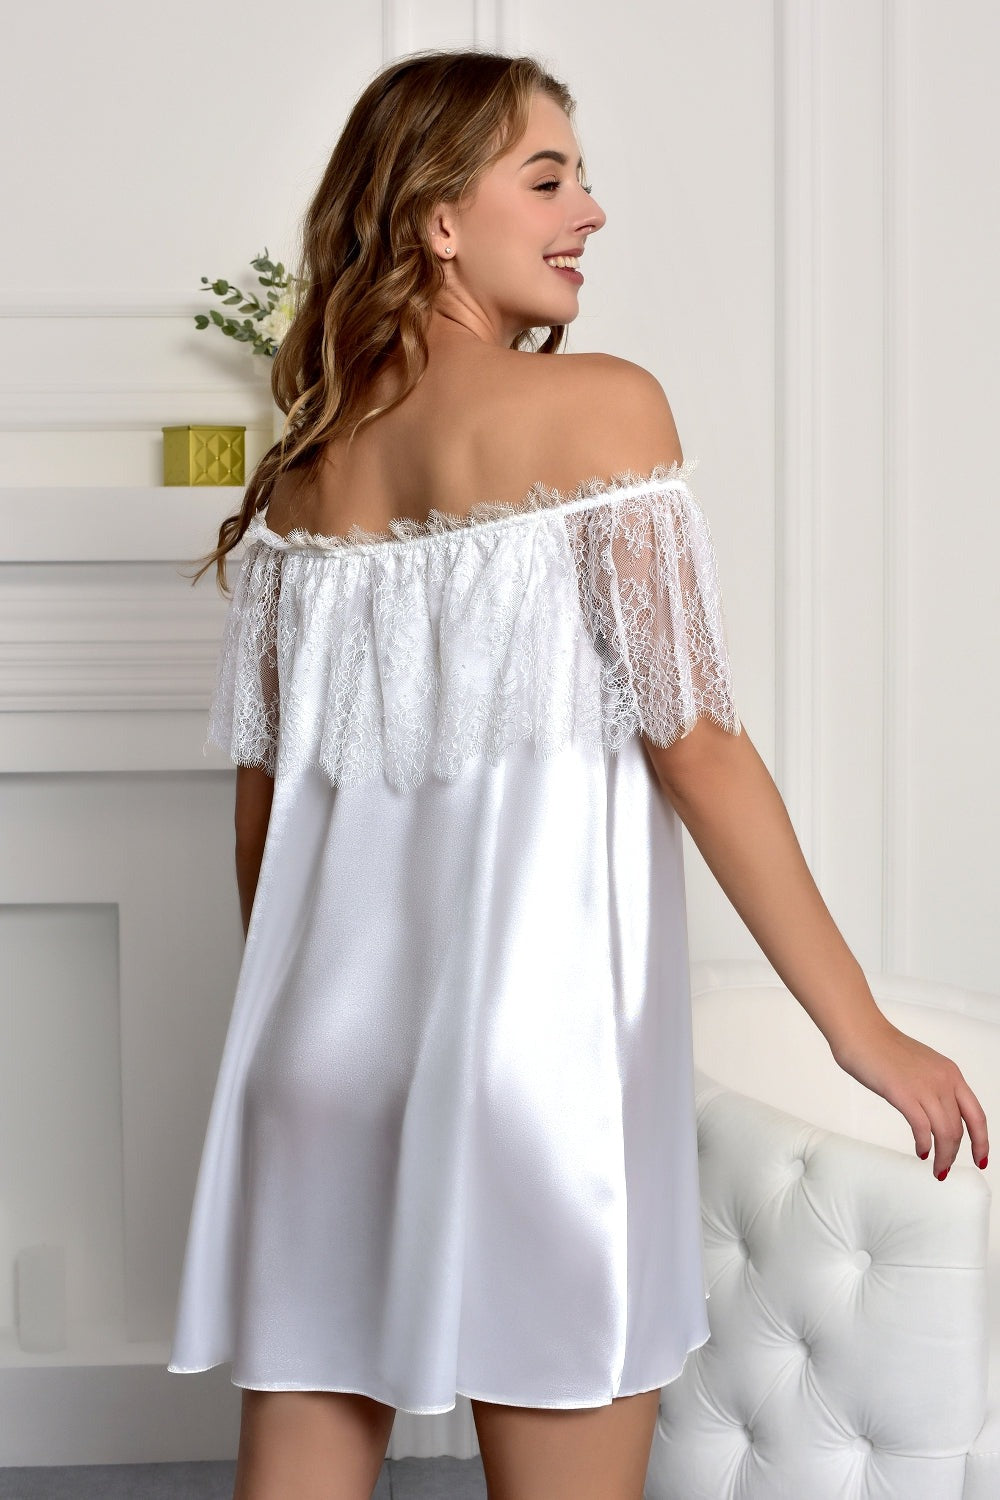 Bridal Nightwear with Off-Shoulder Design